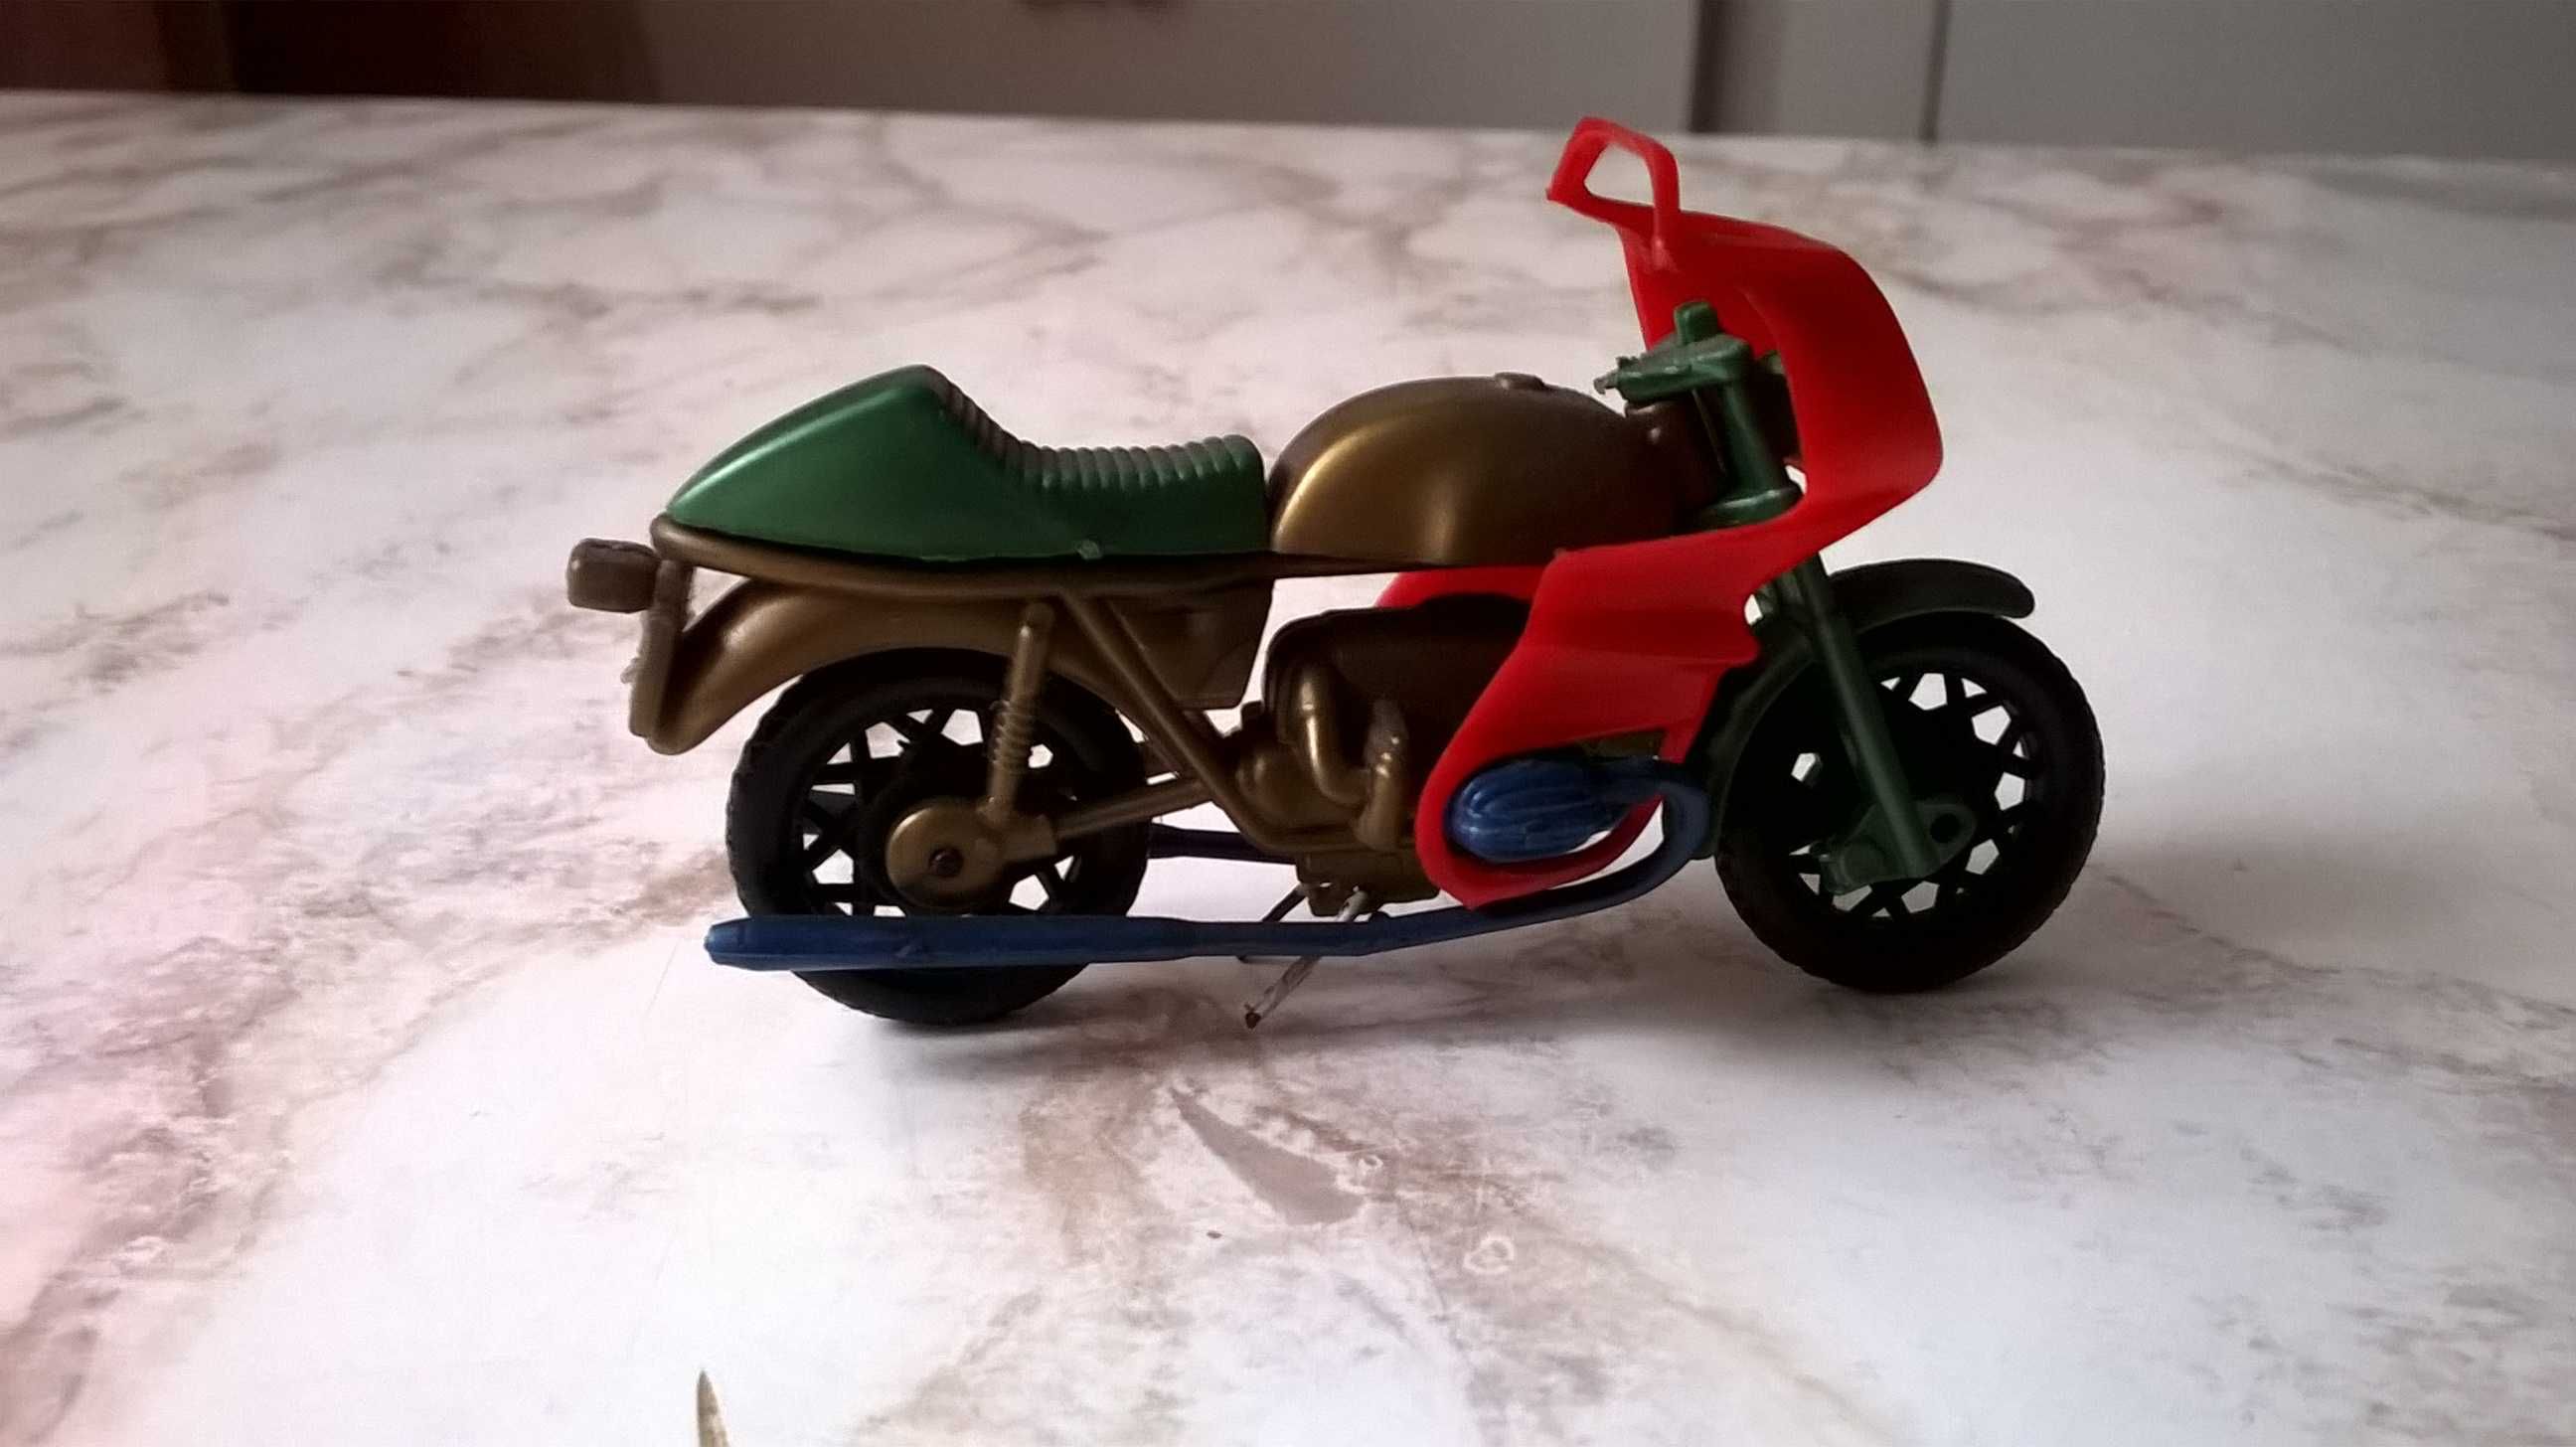 model motoru, motocykla, ścigacza - plastikowy